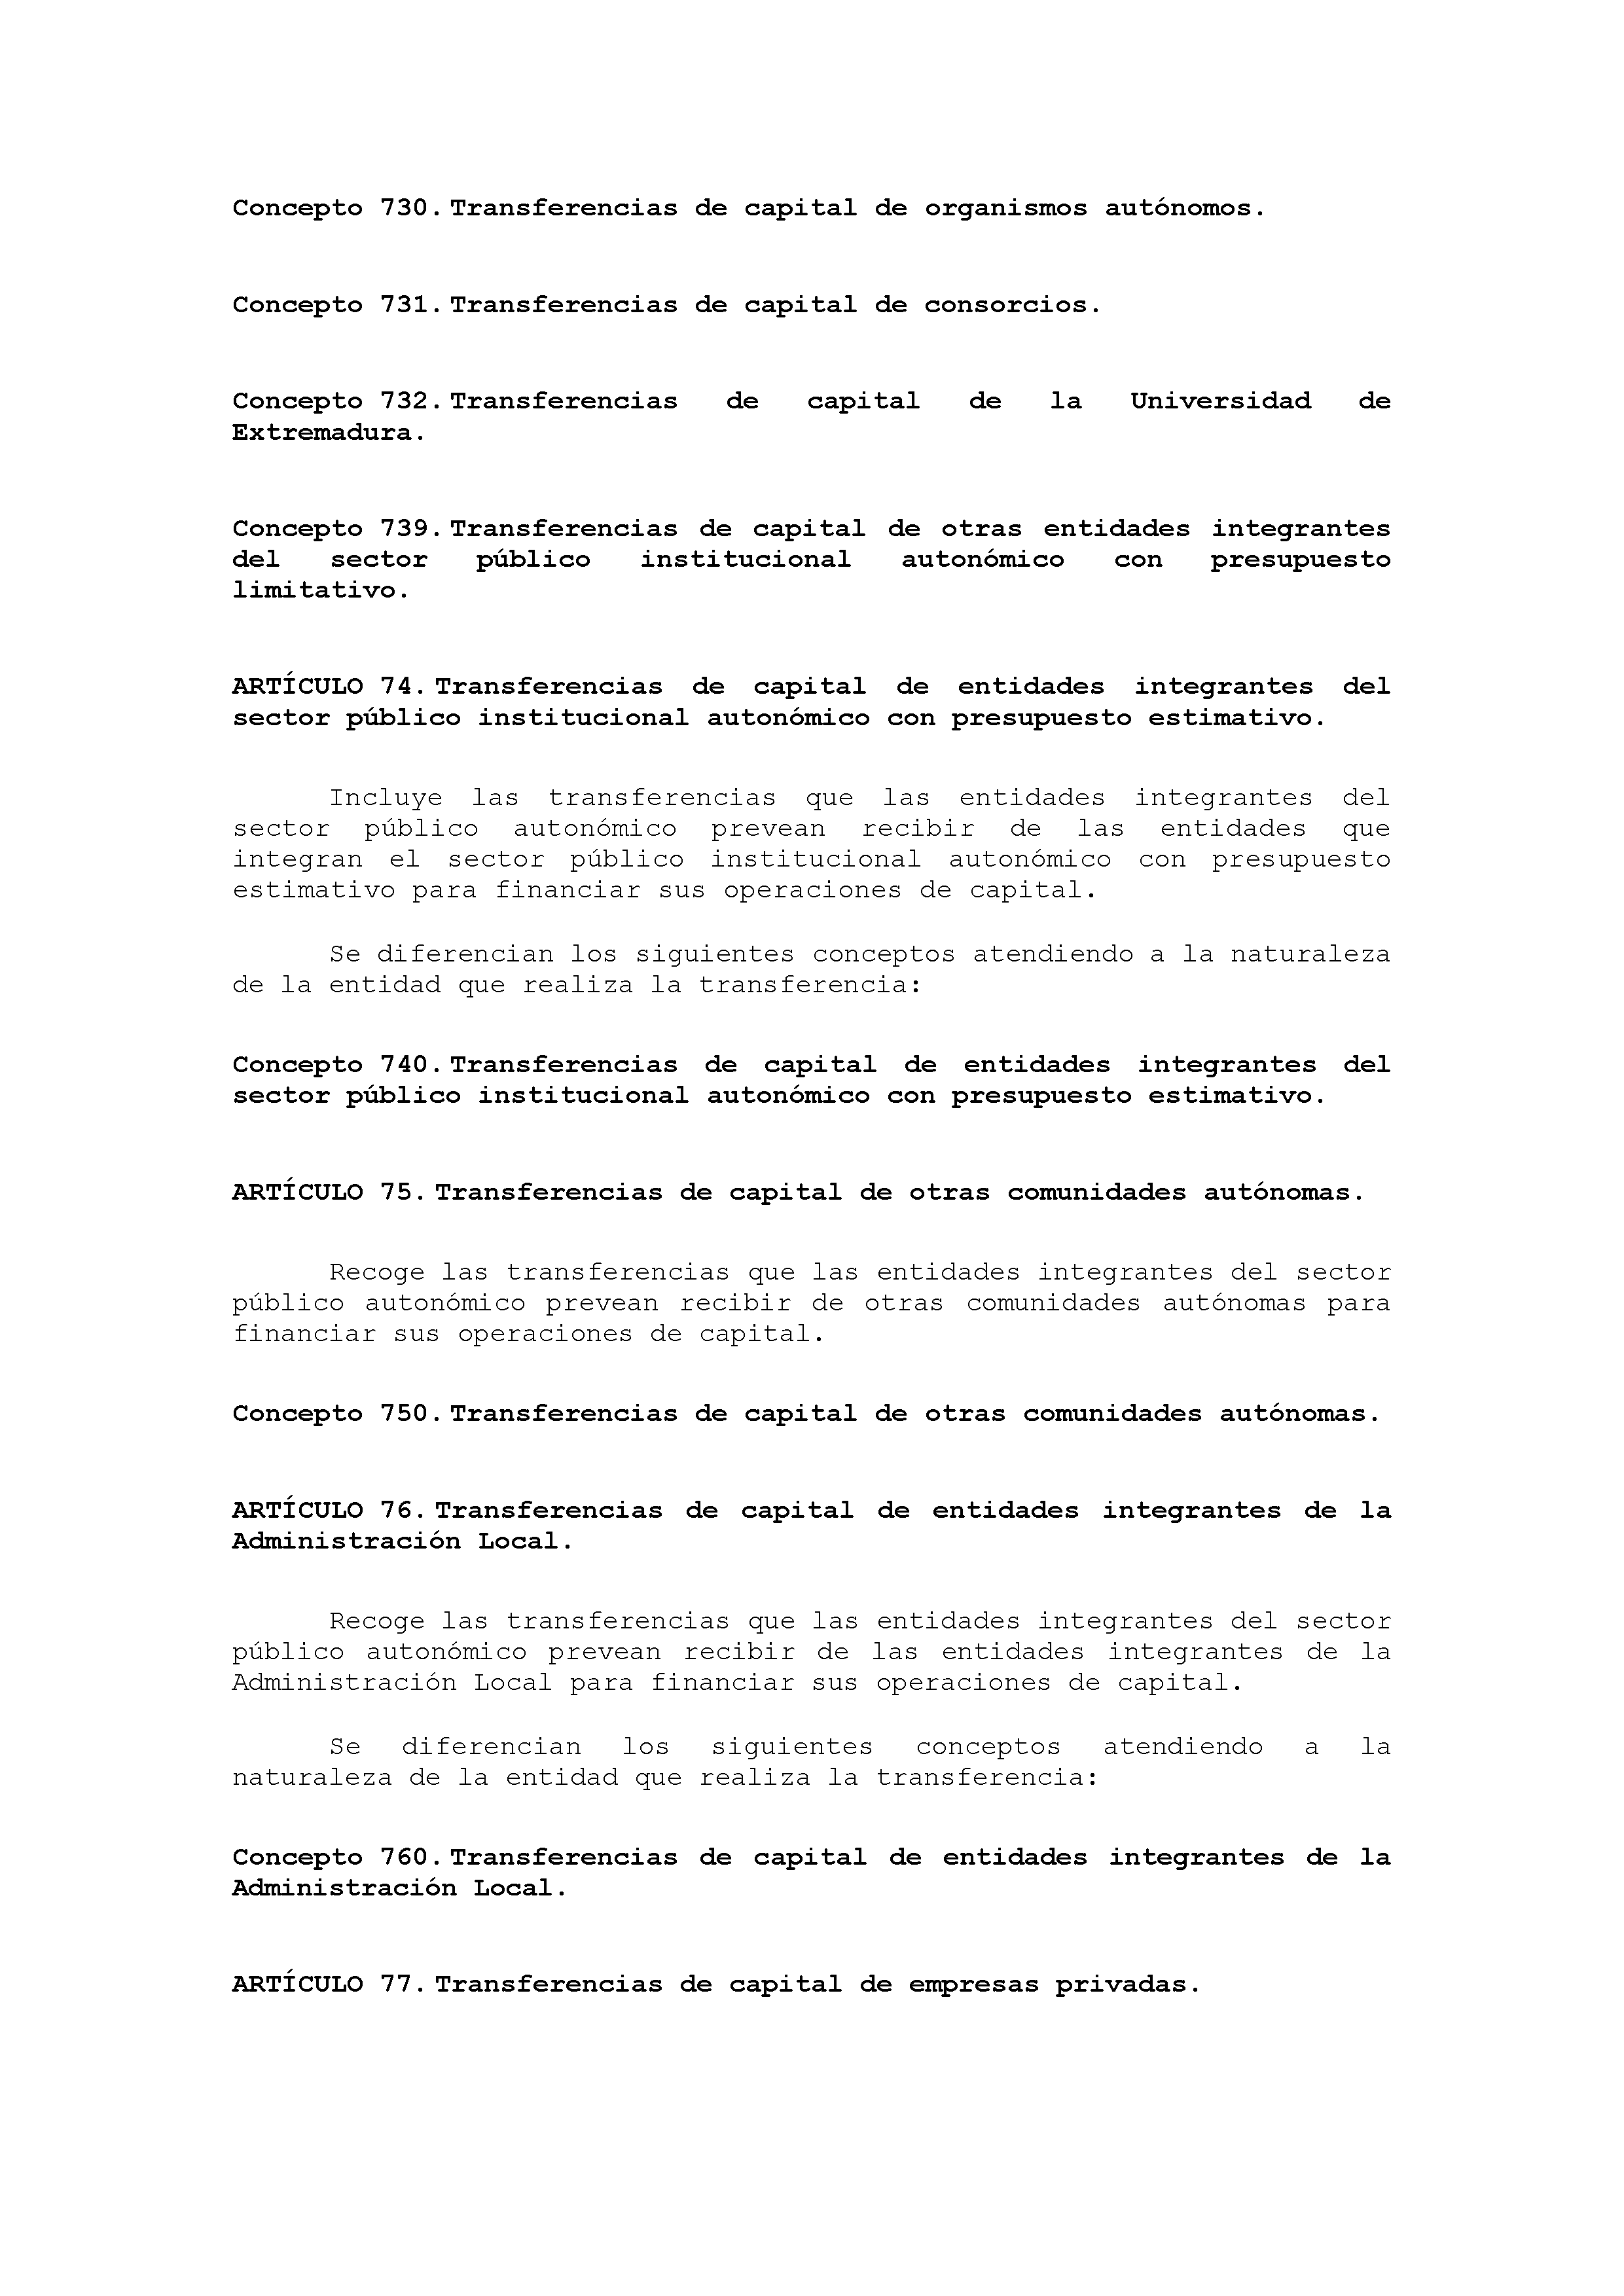 ANEXO VIII CÓDIGO DE LA CLASIFICACIÓN ECONÓMICA DE LOS INGRESOS PÚBLICOS Pag 21